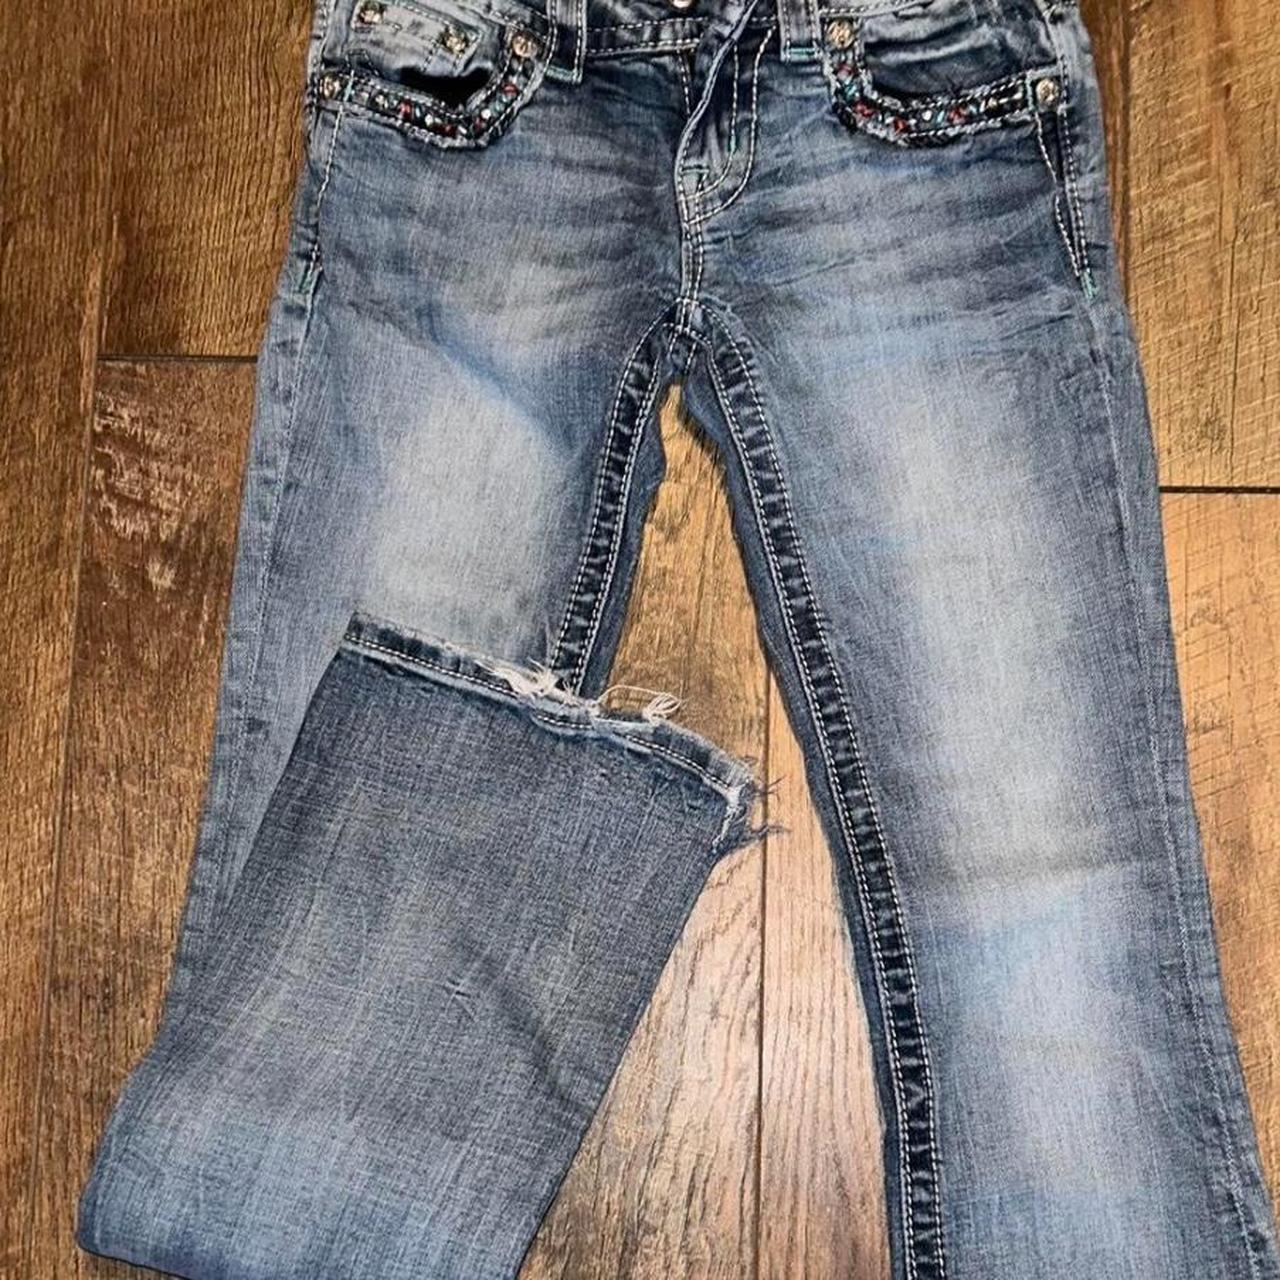 -low rise boot cut miss me jeans -size 25 - Depop